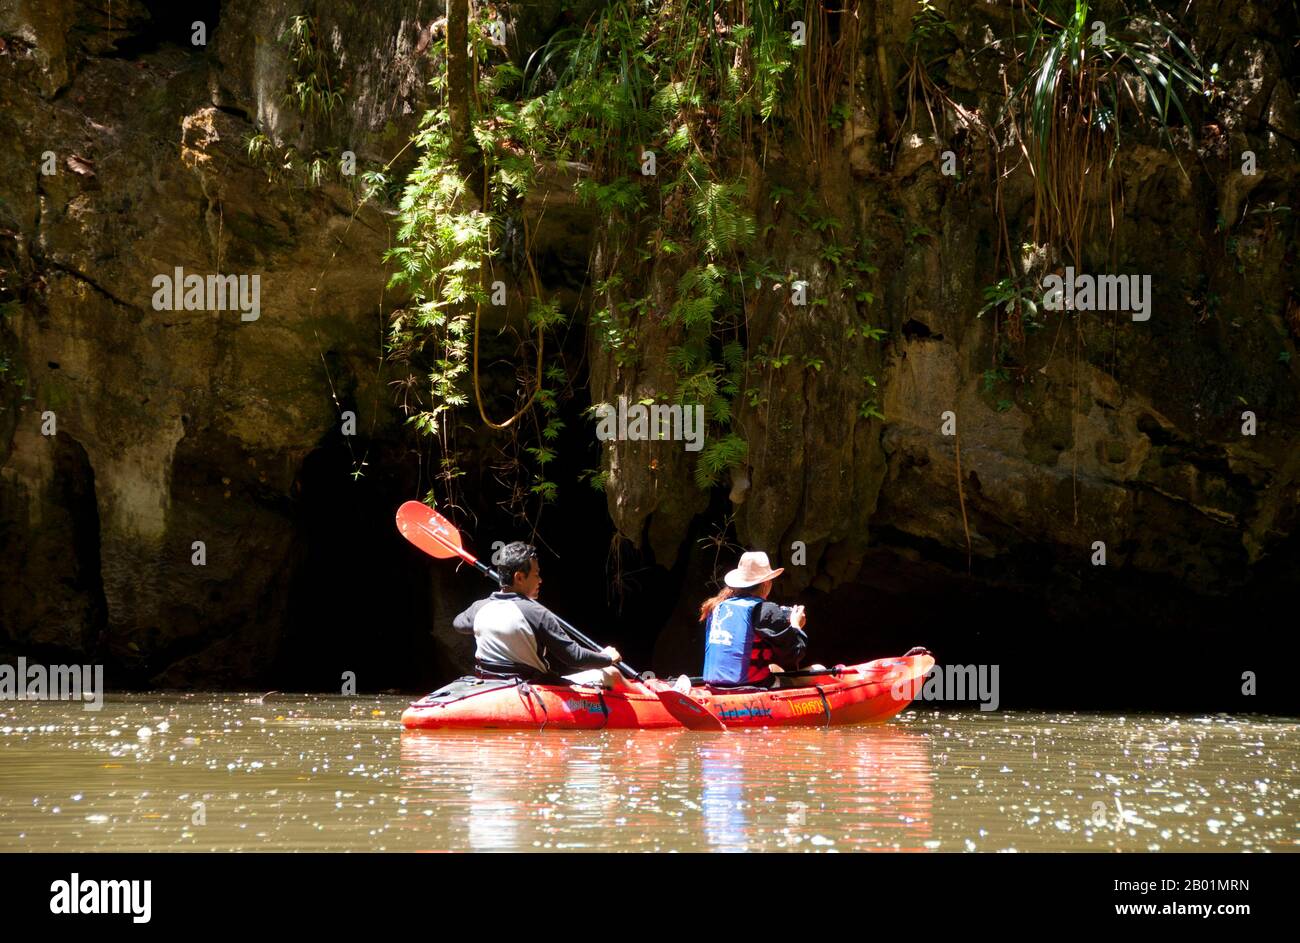 Thailandia: Kayak in una delle lagune chiuse, rispetto al parco nazionale di Bokkharani, provincia di Krabi. Il Parco Nazionale di Than Bokkharani si trova nella provincia di Krabi a circa 45 chilometri (28 miglia) a nord-ovest della città di Krabi. Il parco copre un'area di 121 chilometri quadrati (47 miglia quadrate) ed è caratterizzato da una serie di affioramenti calcarei, foreste pluviali sempreverdi, foreste di mangrovie, torbiere e molte isole. Ci sono anche numerose grotte e complessi rupestri con alcune spettacolari stalagmiti e stalattiti. Il Bokkharani è incentrato su due famose grotte, Tham Lot e Tham Phi Hua. Foto Stock